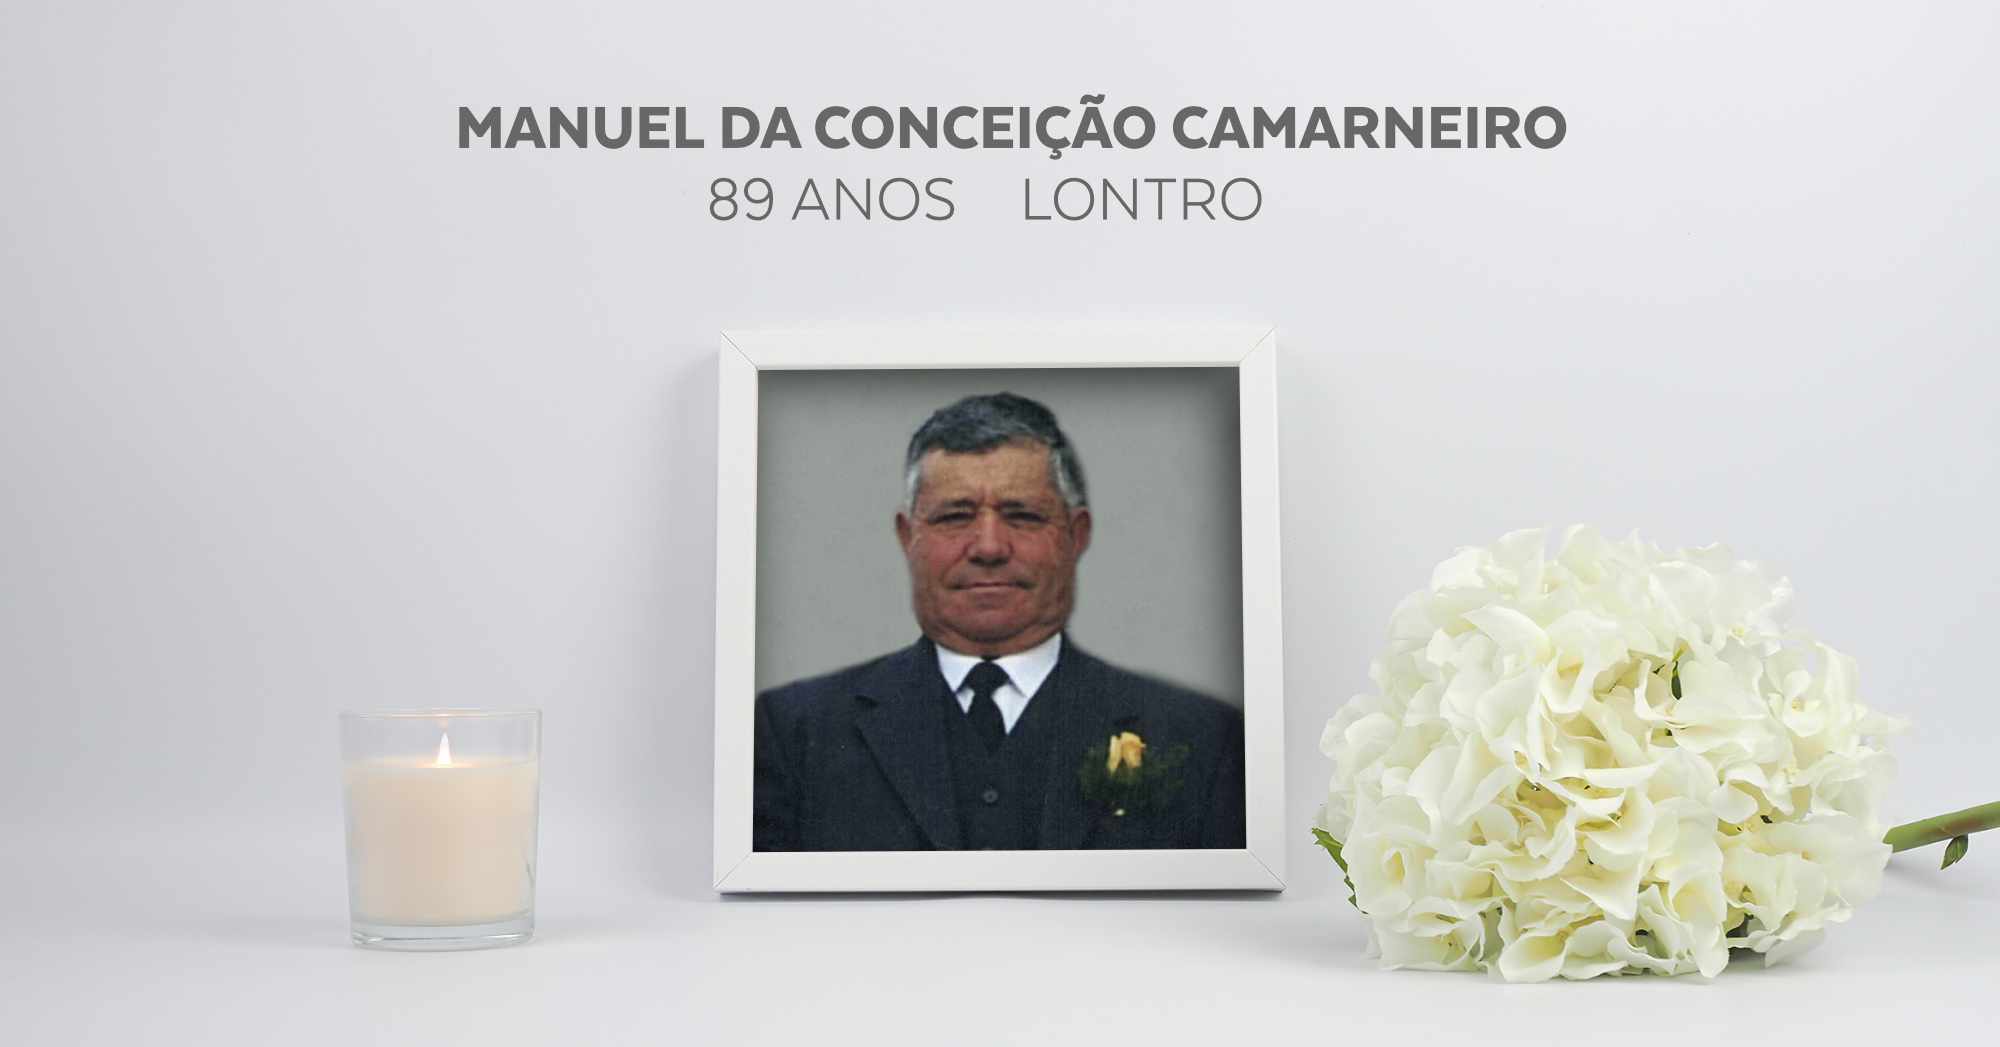 Manuel da Conceição Camarneiro